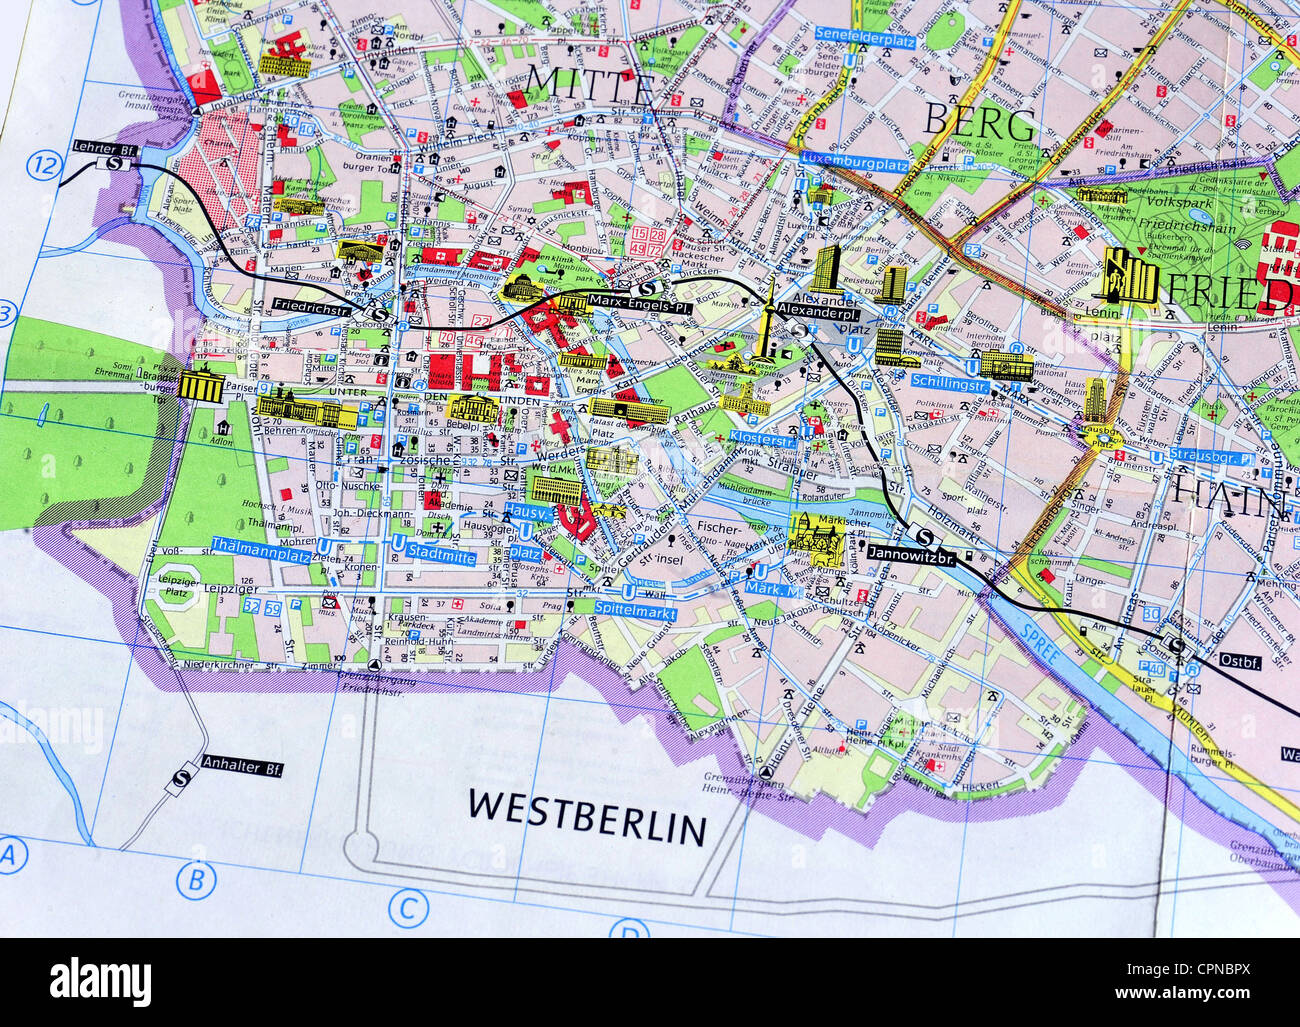 Cartographie Carte De La Ville Berlin Est Detail Berlin Mitte Allemagne De L Est 1980 Droits Supplementaires Clearences Non Disponible Cpnbpx 